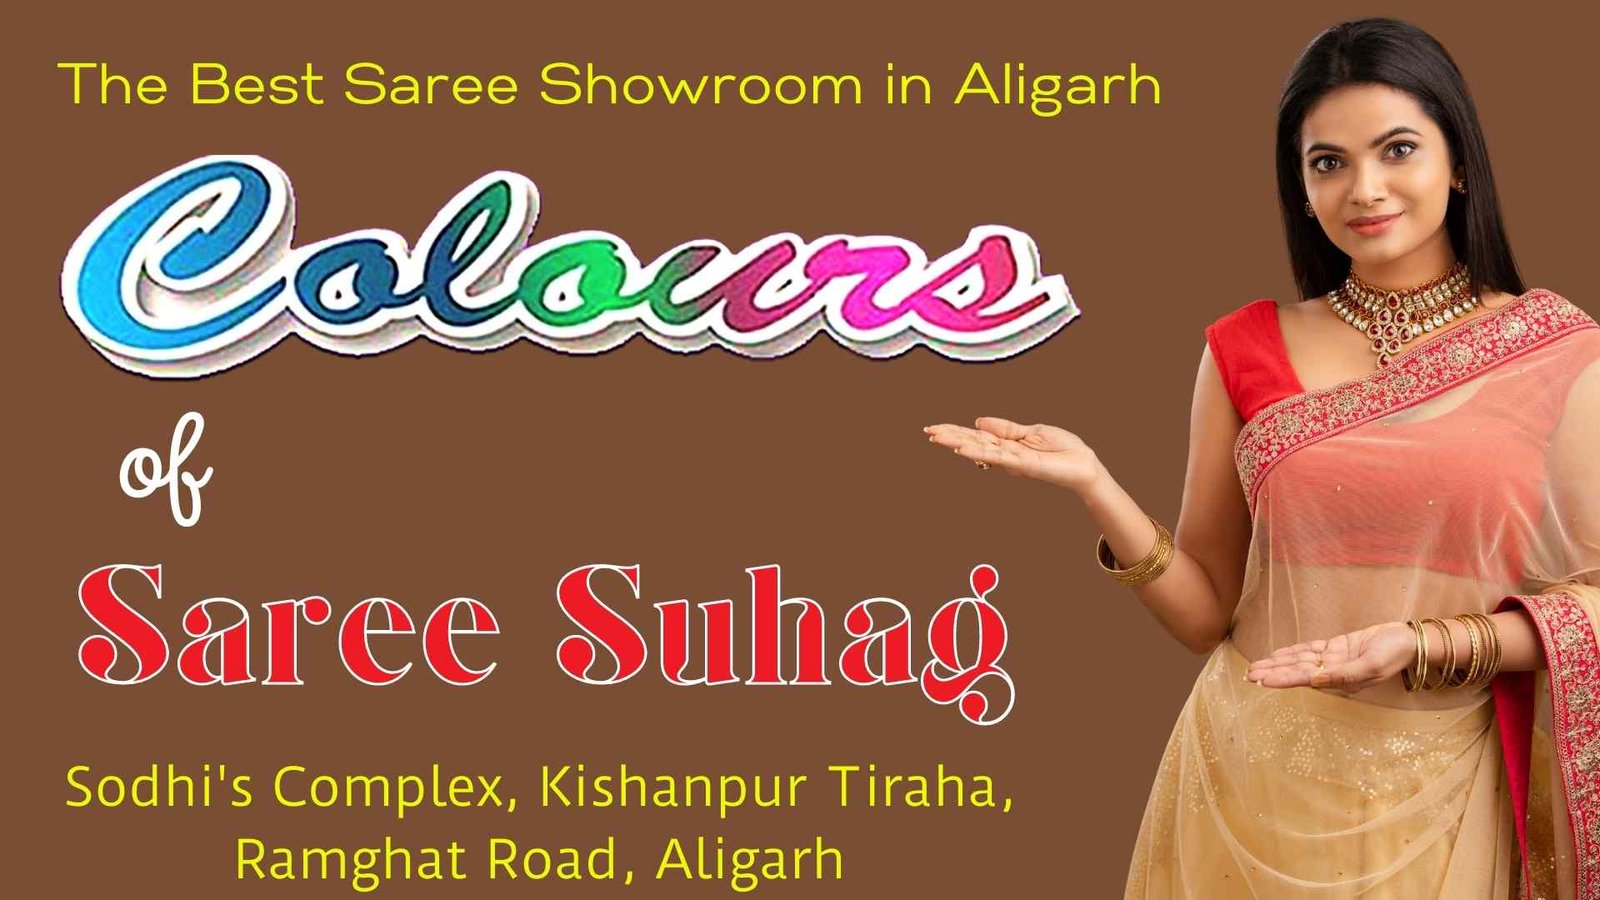 The Best Saree Showroom in Aligarh Best Garara showroom in Aligarh